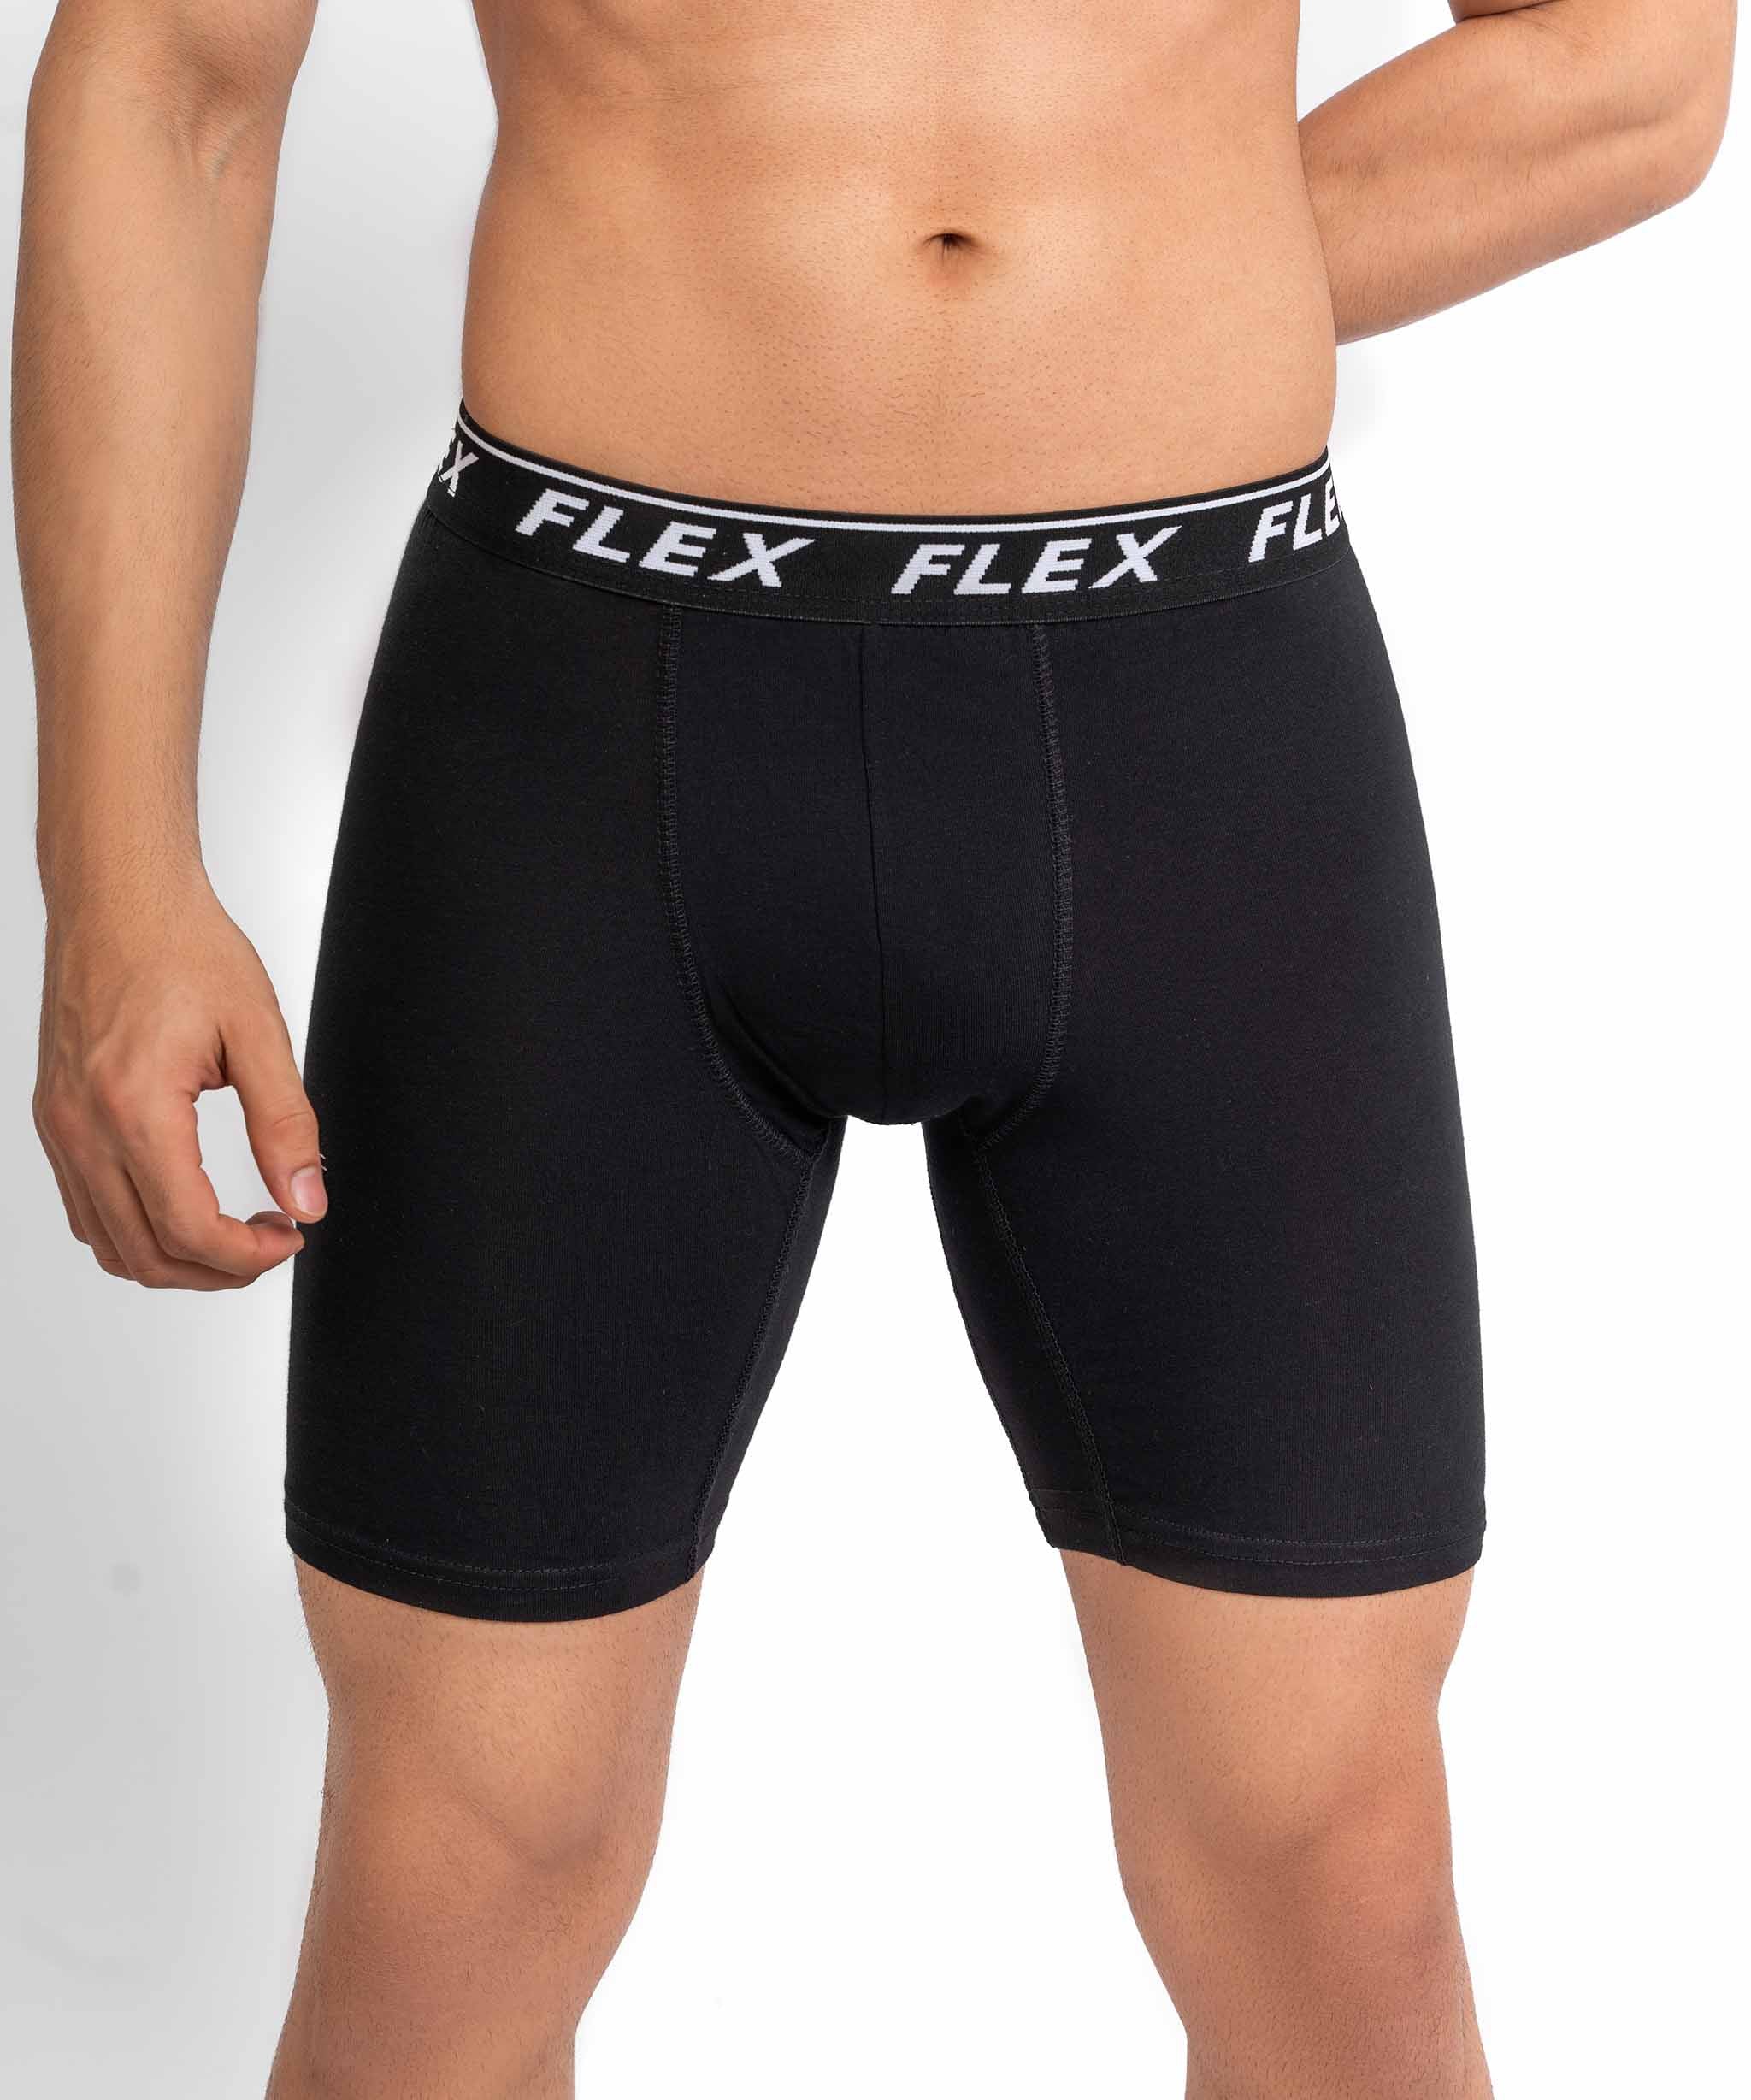 Box of 2 Boxer Trunks (Black & White) – Flex Knitwear